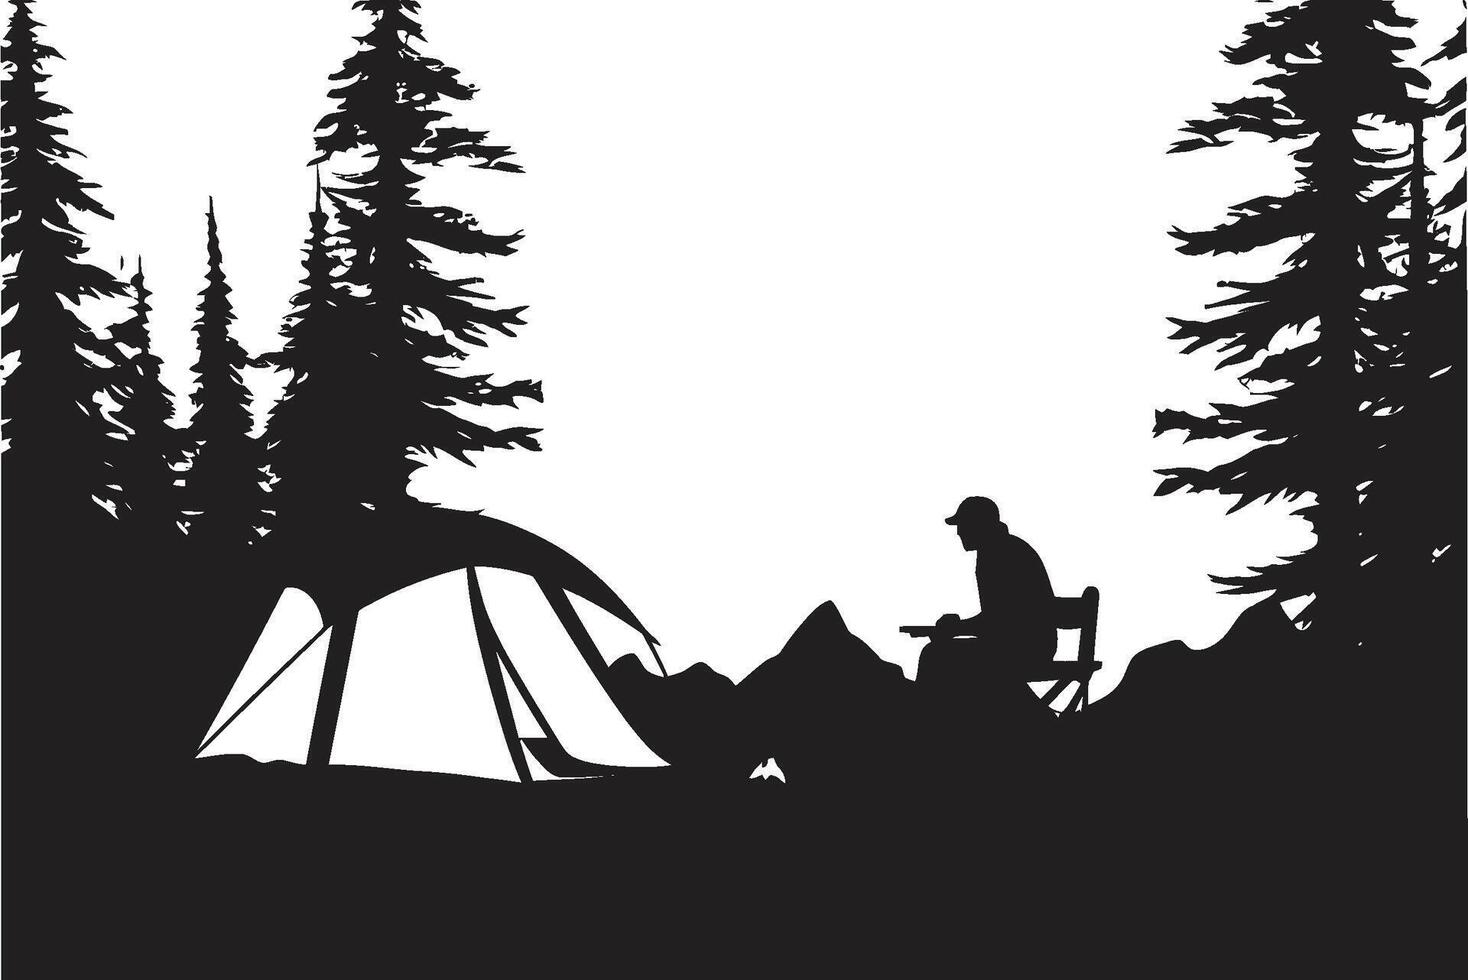 stellato campeggio elegante vettore logo per ore notturne campeggio illuminato dalla luna avventura elegante nero icona illustrare campeggio beatitudine